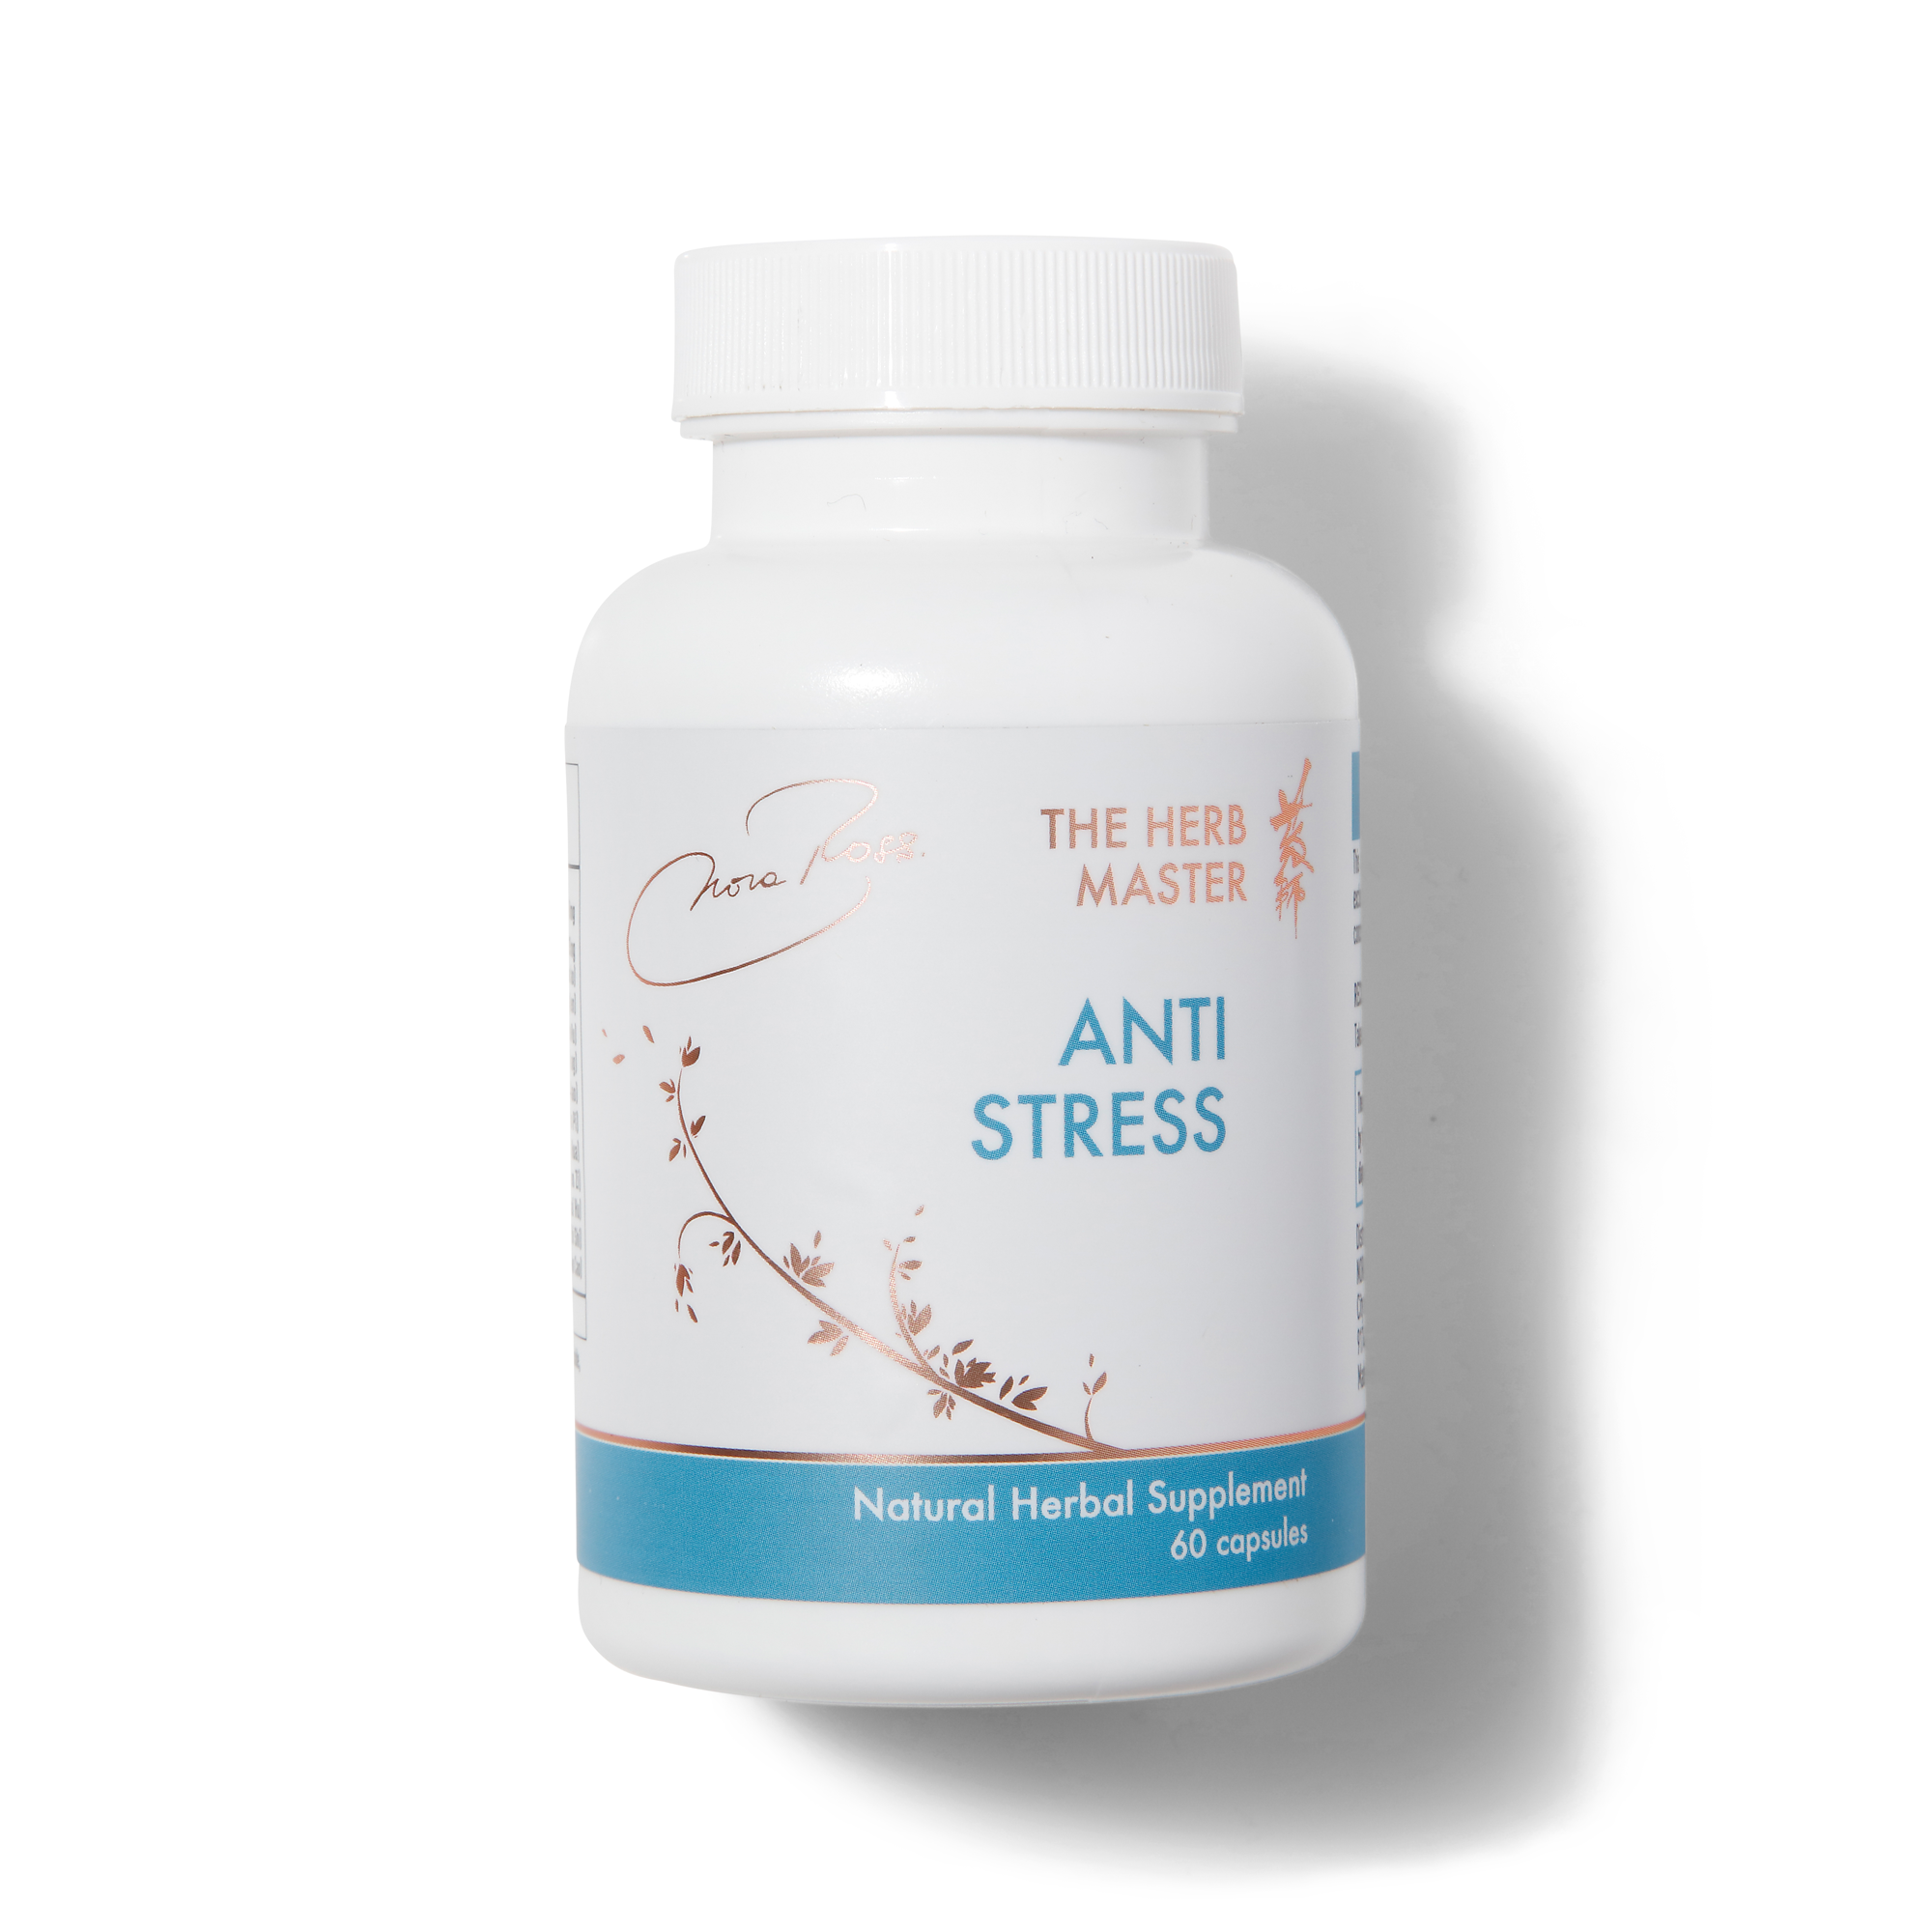 Vringra Stress Free Capsules - Anti Stress Capsules - Stress Relief  Capsules 60 Cap.